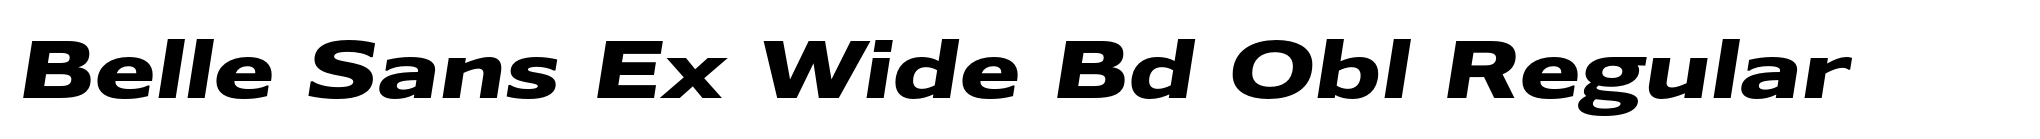 Belle Sans Ex Wide Bd Obl Regular image